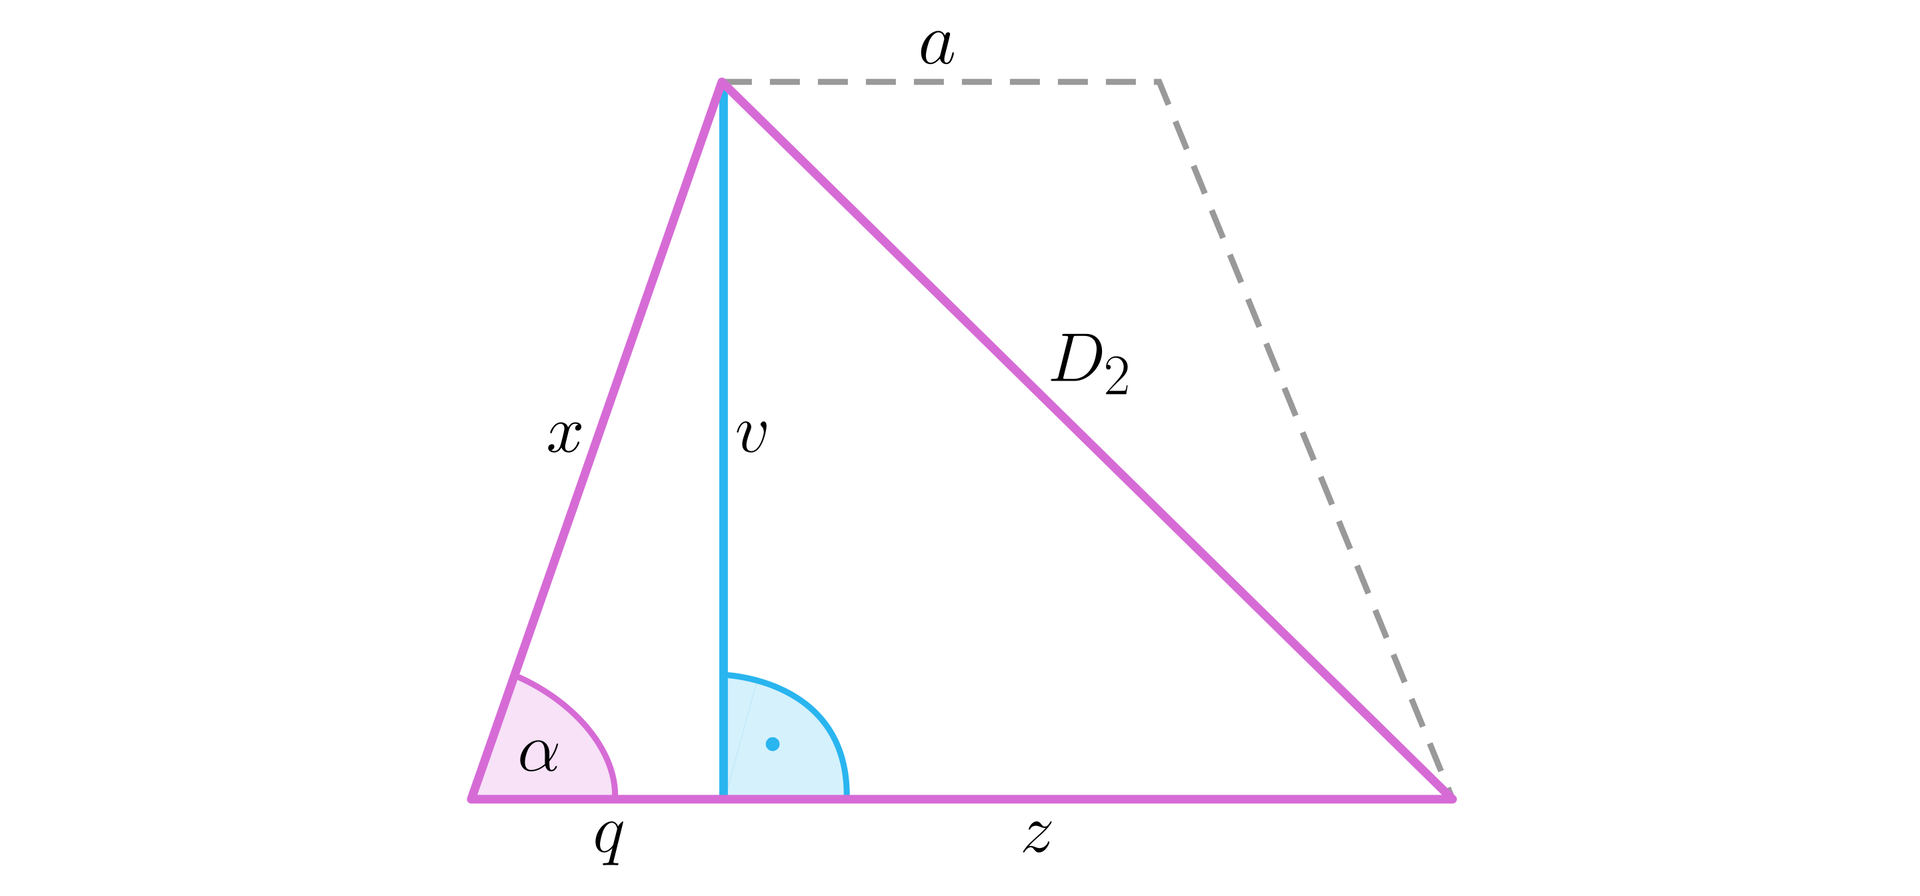 Na ilustracji przedstawiono trójkąt ABC, o podstawie q+z, oraz ramionach x i D2. Linią przerywaną dorysowano odcinek o długości a oraz x, w taki sposób, że powstał trapez równoramienny o przekątnej równej D2. Wysokość, oznaczona literą v opuszczona na podstawę AB dzieli podstawę trójkąta, oraz dolną podstawę trapezu na odcinek q i z. Między ramieniem trójkąta D2  a podstawą, znajduje się kąt α.